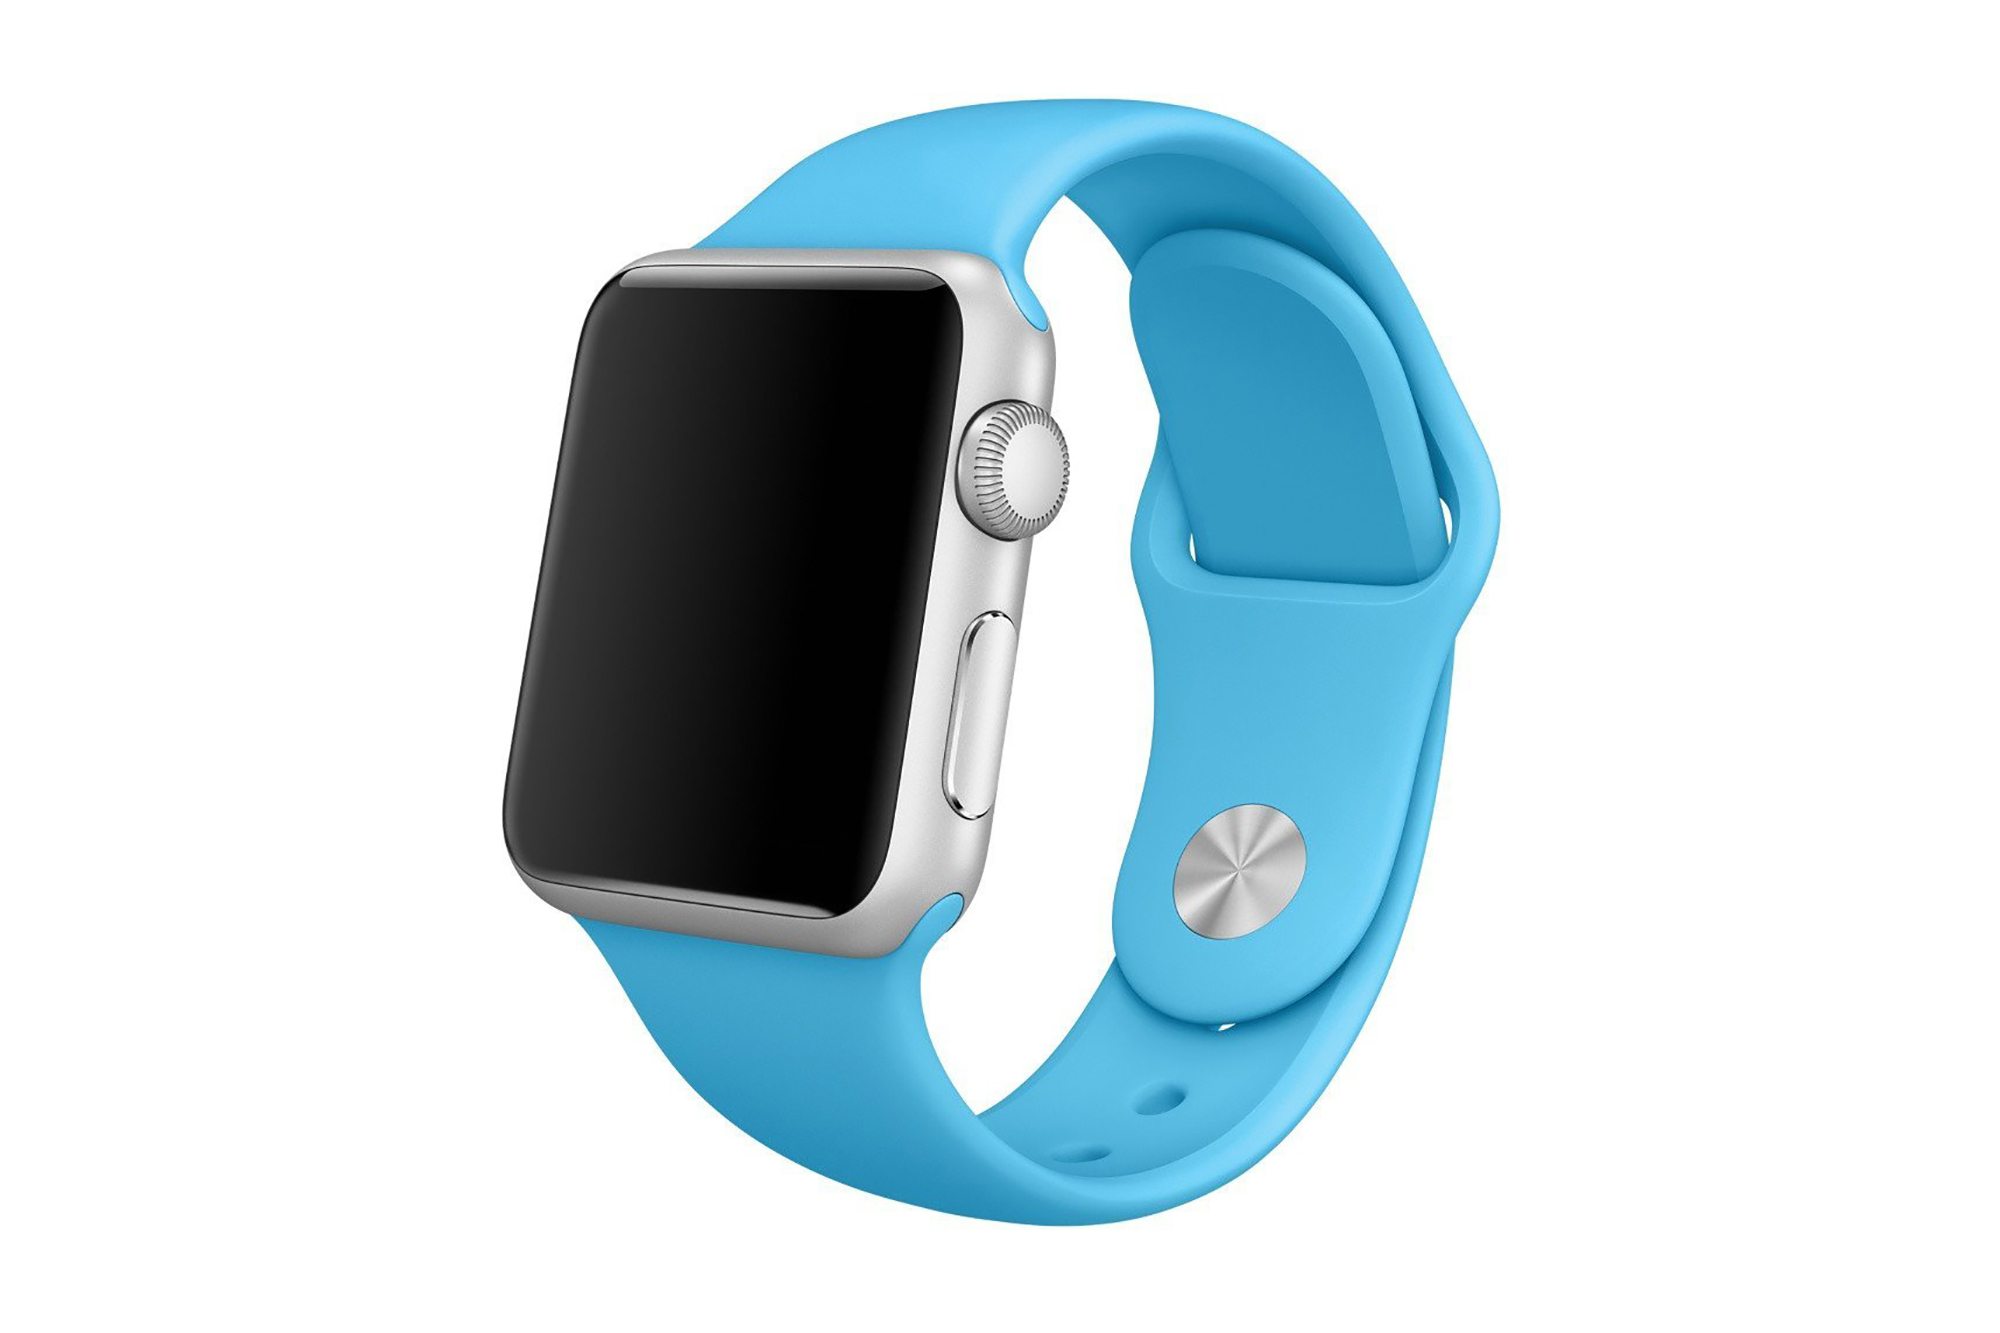 Toke Kruse udlodder det nye Apple Watch